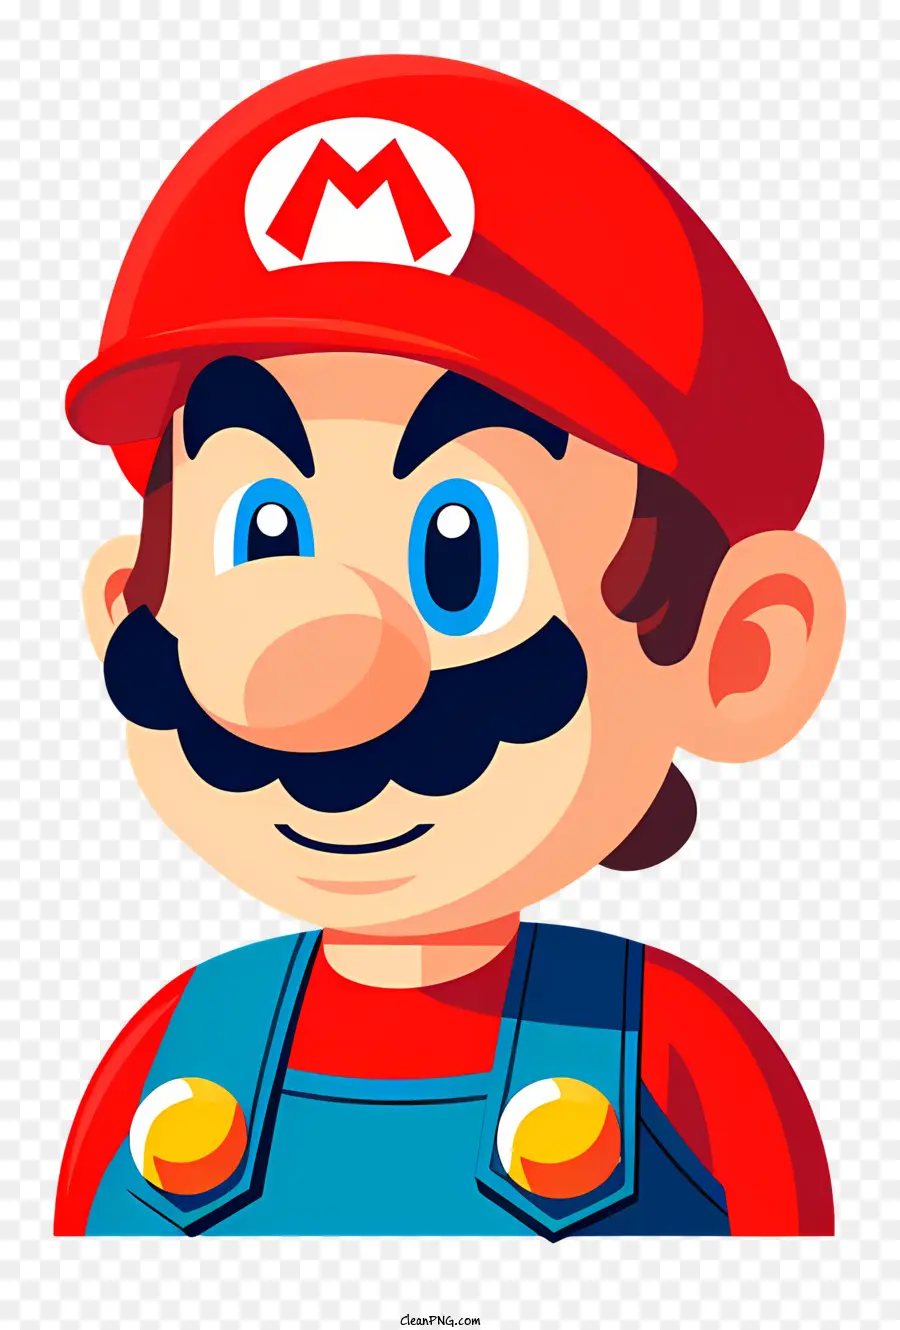 weißen hintergrund - Cartoon -Charakter Mario, trägt rote Kappe und Schnurrbart